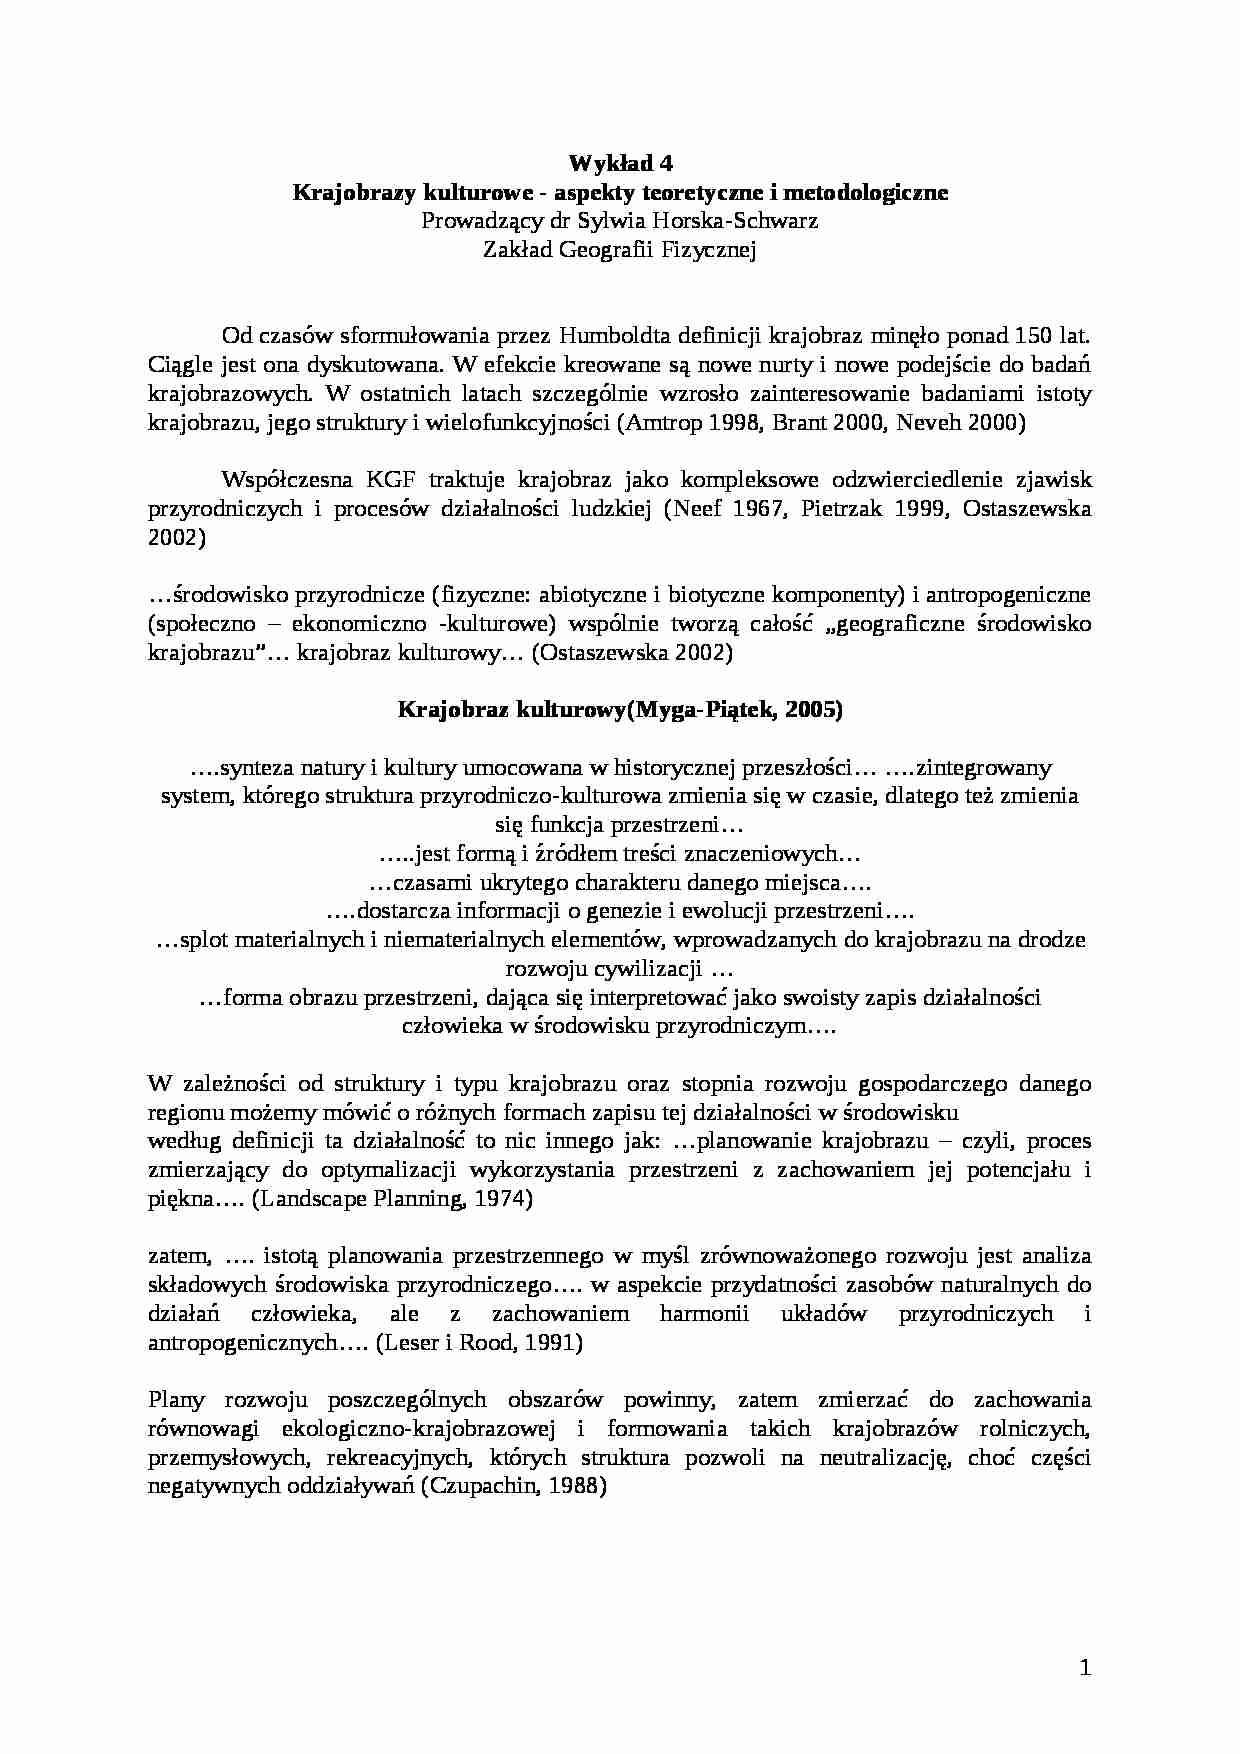 Kompleksowa geografia fizyczna Polski: Wykład 4 - Krajobrazy kulturowe - aspekty teoretyczne i metodologiczne - strona 1